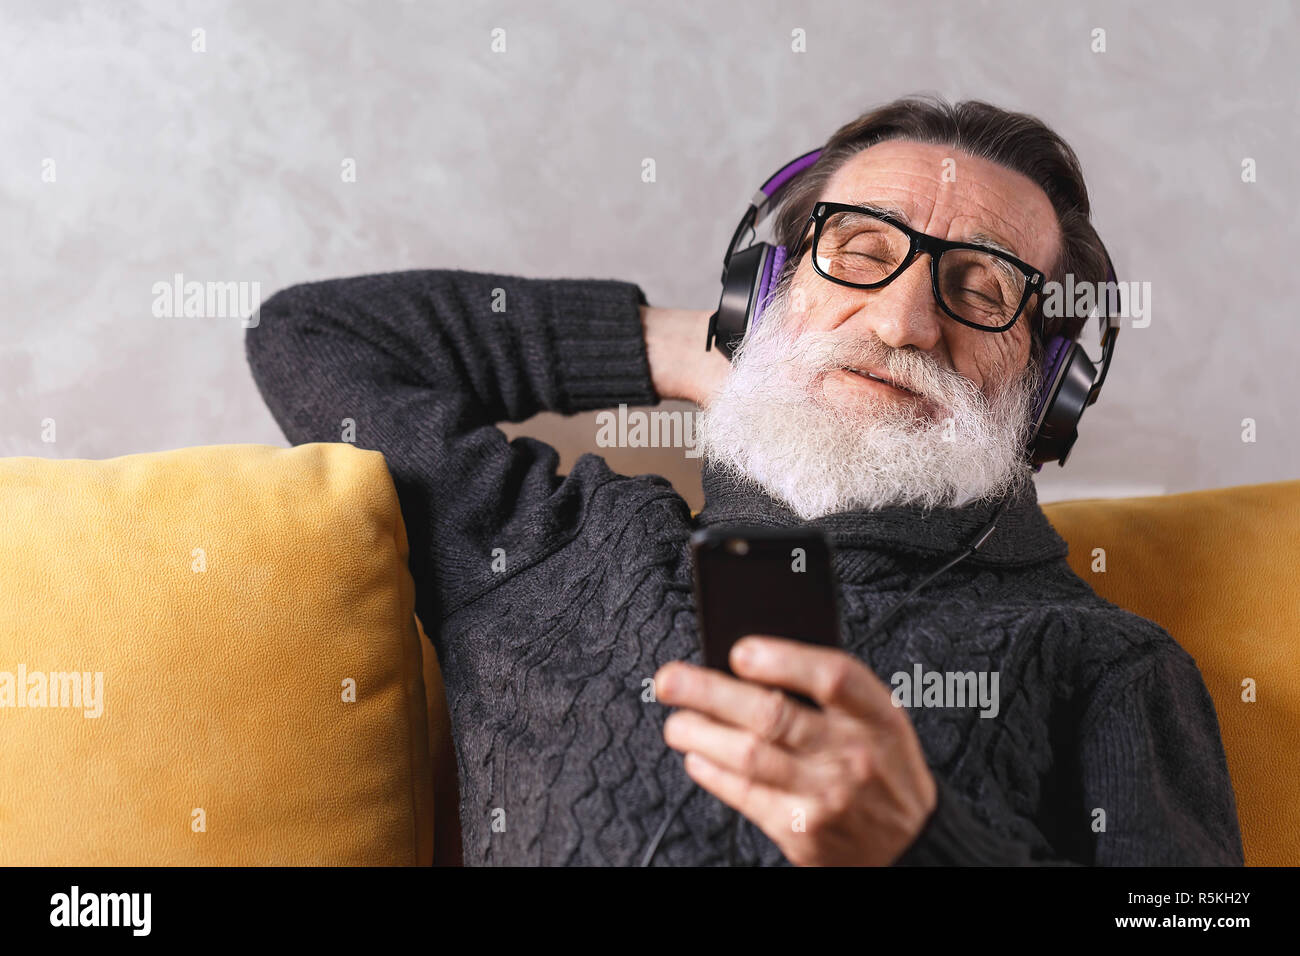 Senior heiter bärtigen Mann mit Brille grau Pullover entspannen mit dem Smartphone während der Sitzung in der Kopfhörer auf ein gelbes Sofa in seinem Lichte Wohnzimmer, er seine Augen schließen und zuhören ein berühmter Musiktitel, moderne Technik, Kommunikation Konzept Stockfoto